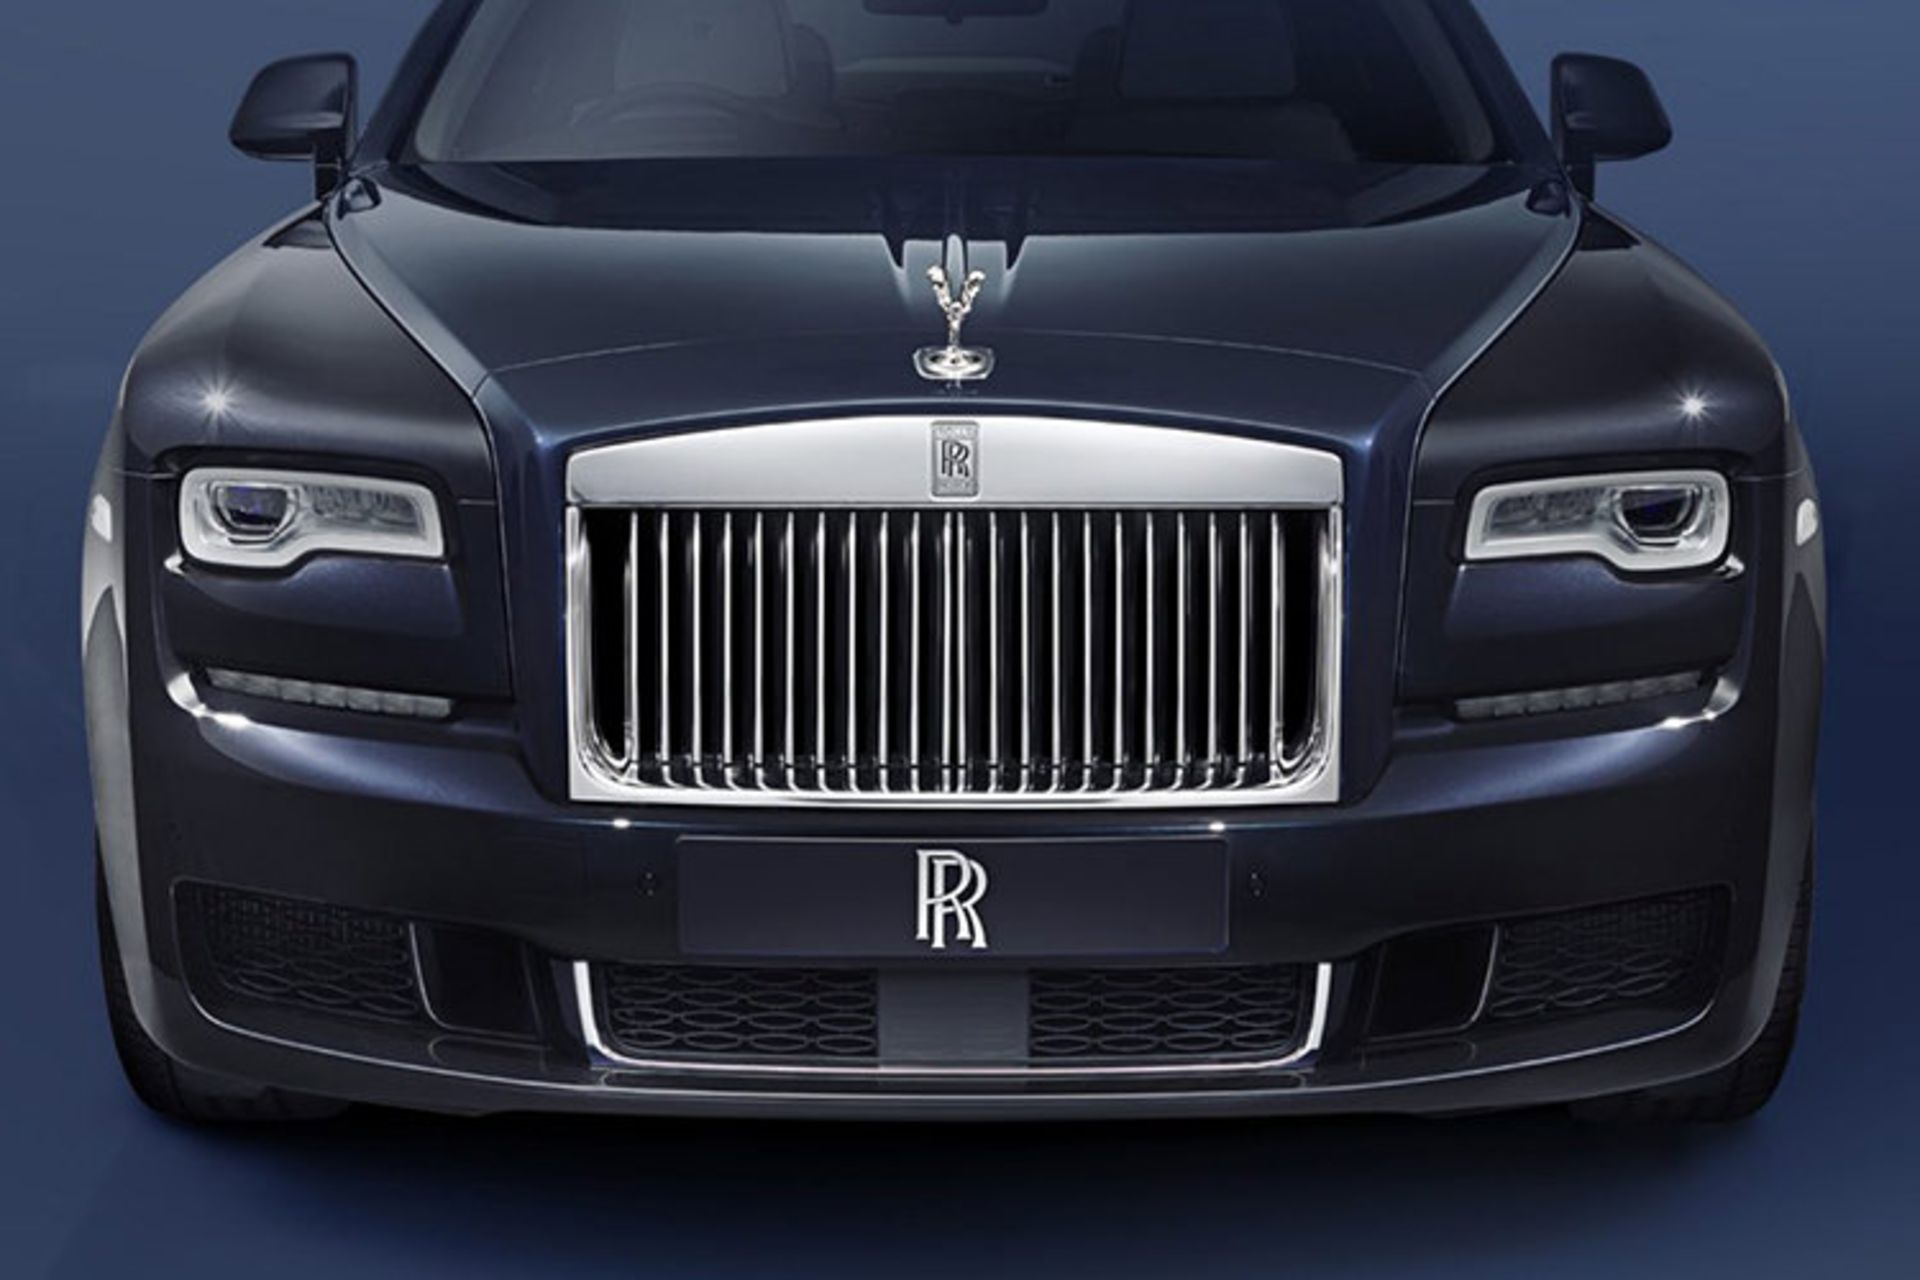 Rolls-Royce Ghost 2018 - رولزرویس گوست